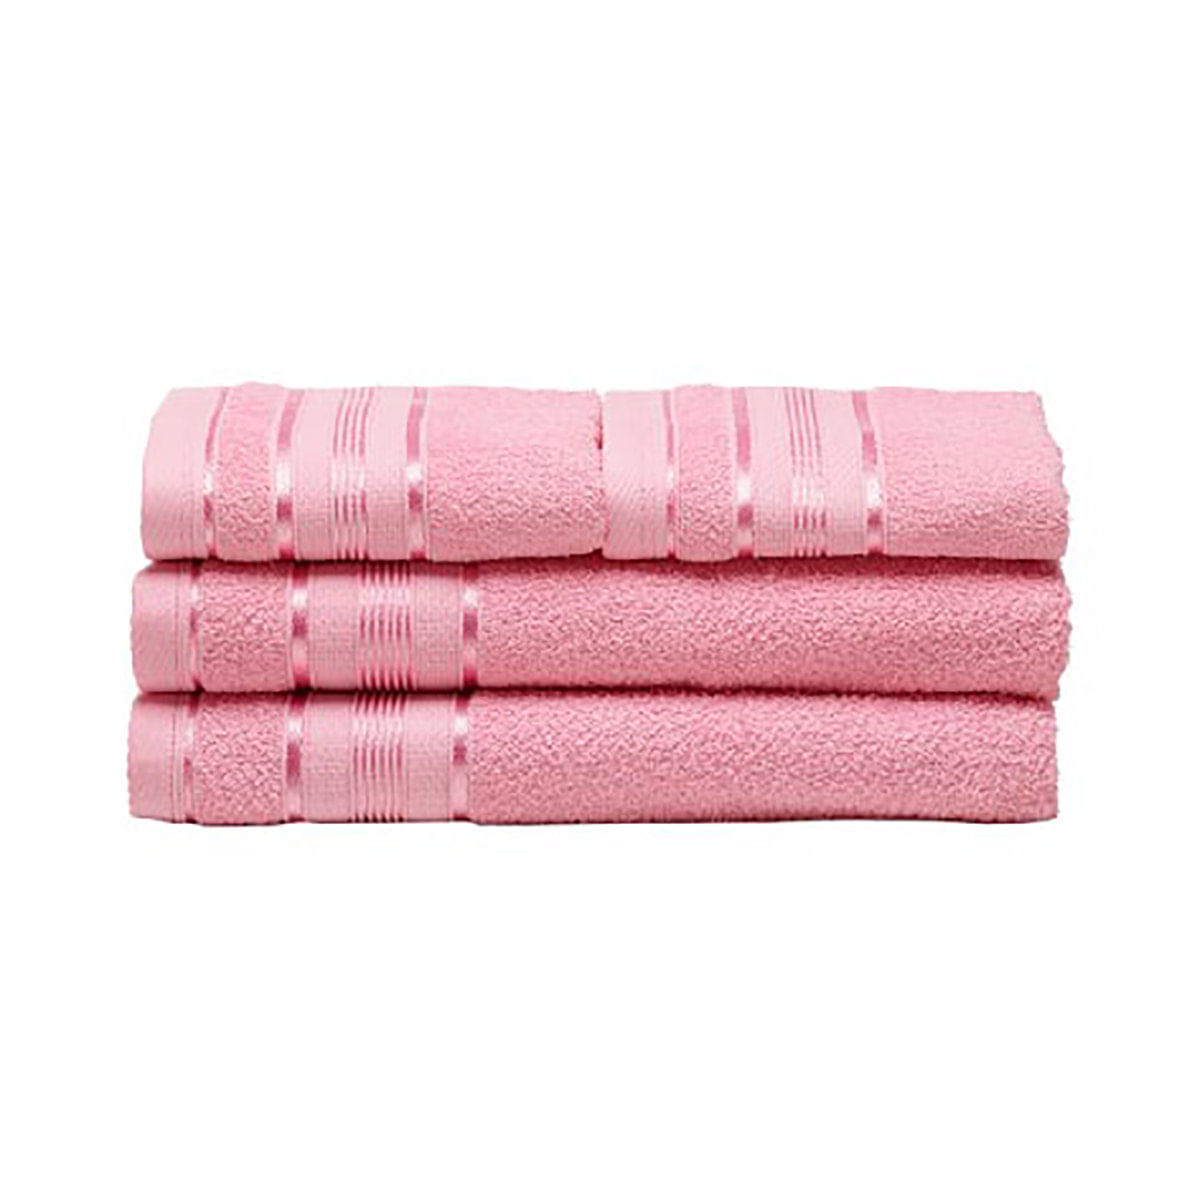 jogo-de-toalhas-santista-banho-e-rosto-royal-royantj4jknu3326-100--algodao-fio-penteado-4-pecas-rosa-1.jpg